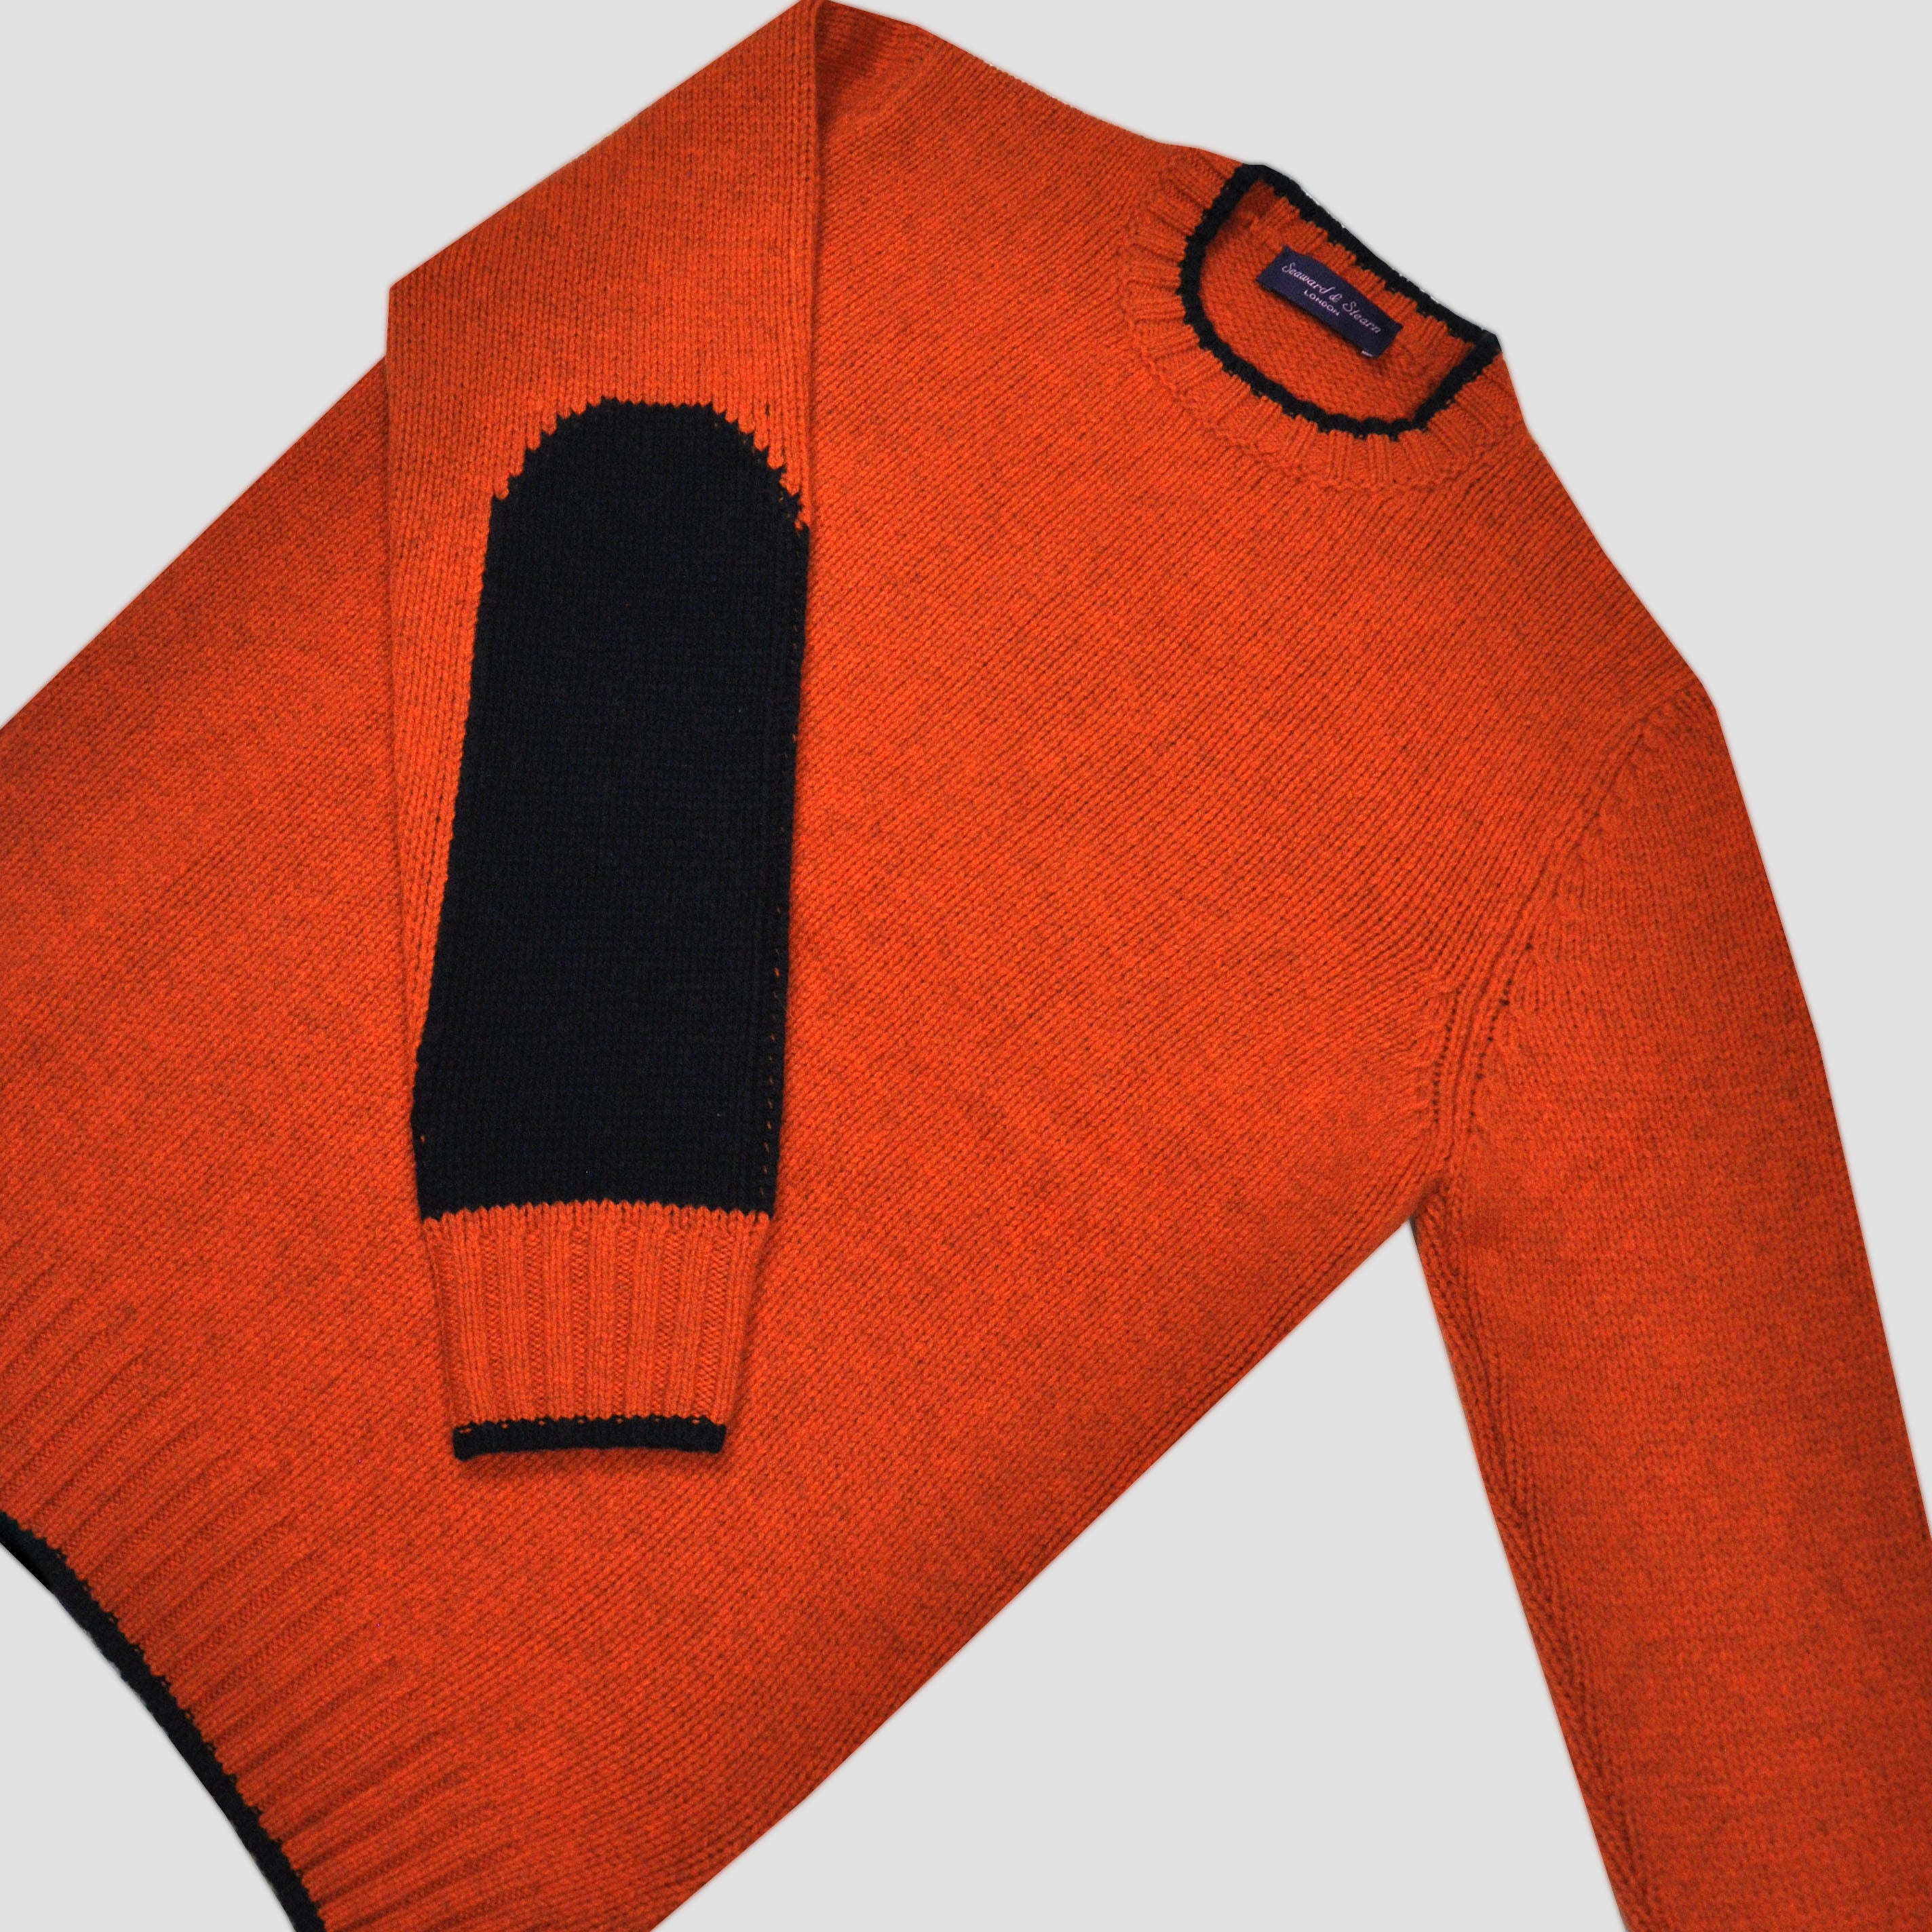 Yak's Wool Crew Neck Jumper in Rusty Orange with Midnight Blue Trim